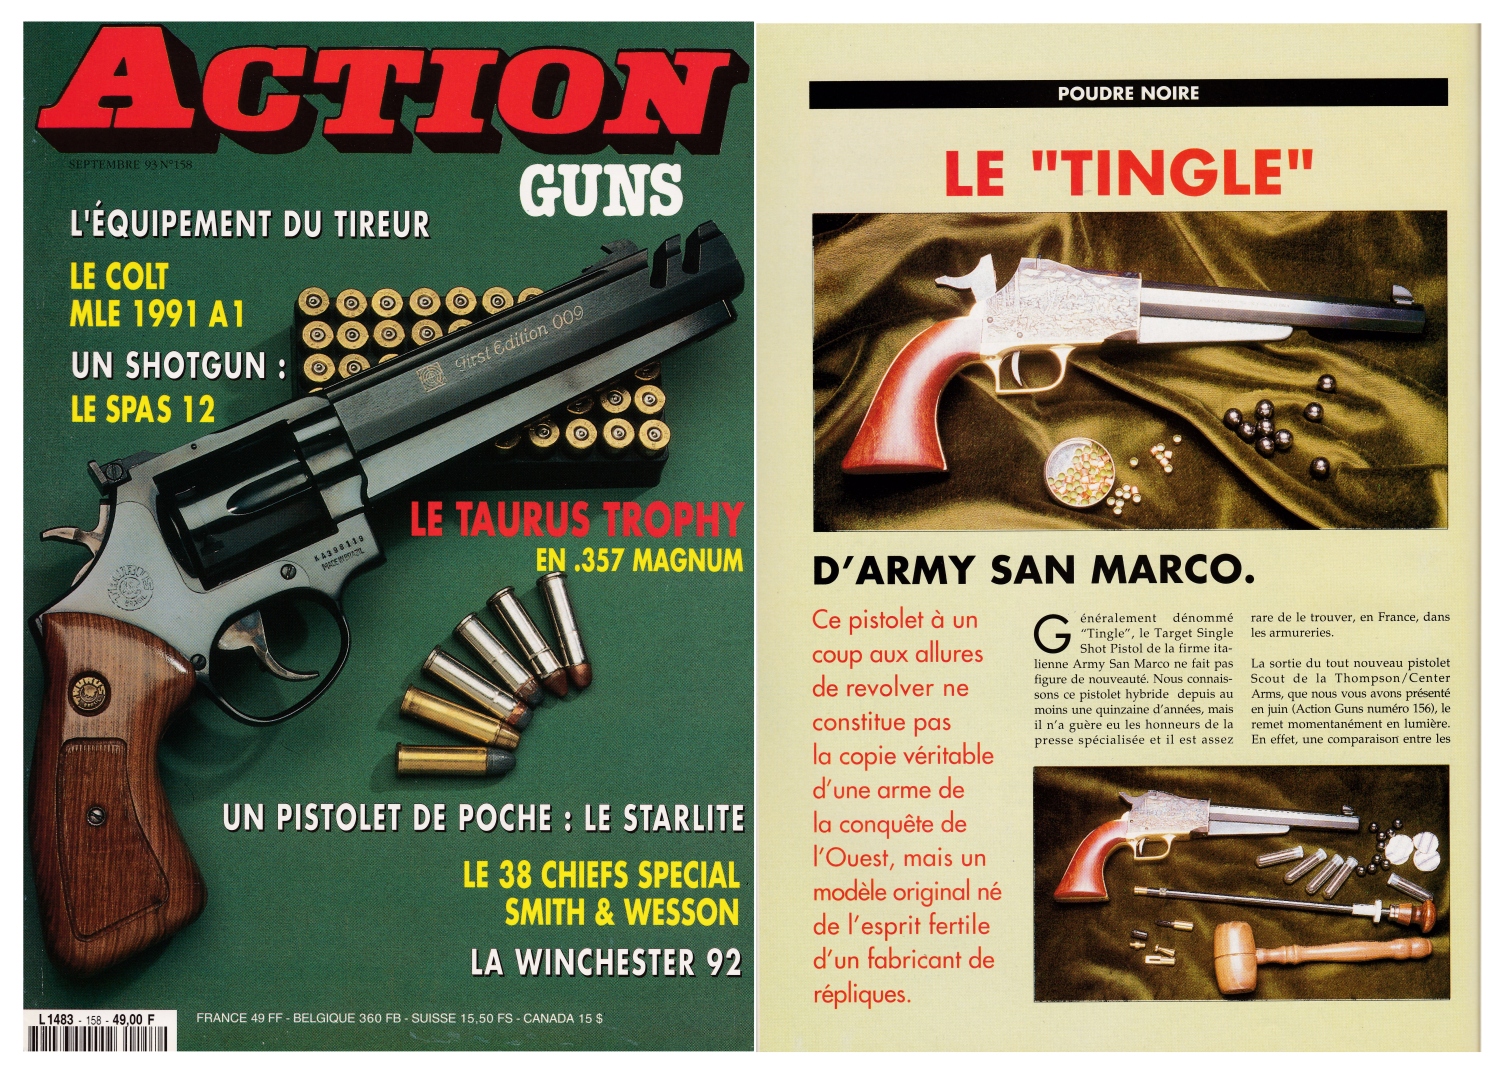 Le banc d’essai du pistolet Armi San Marco « Tingle » a été publié sur 4 pages dans le magazine Action Guns n°158 (septembre 1993).